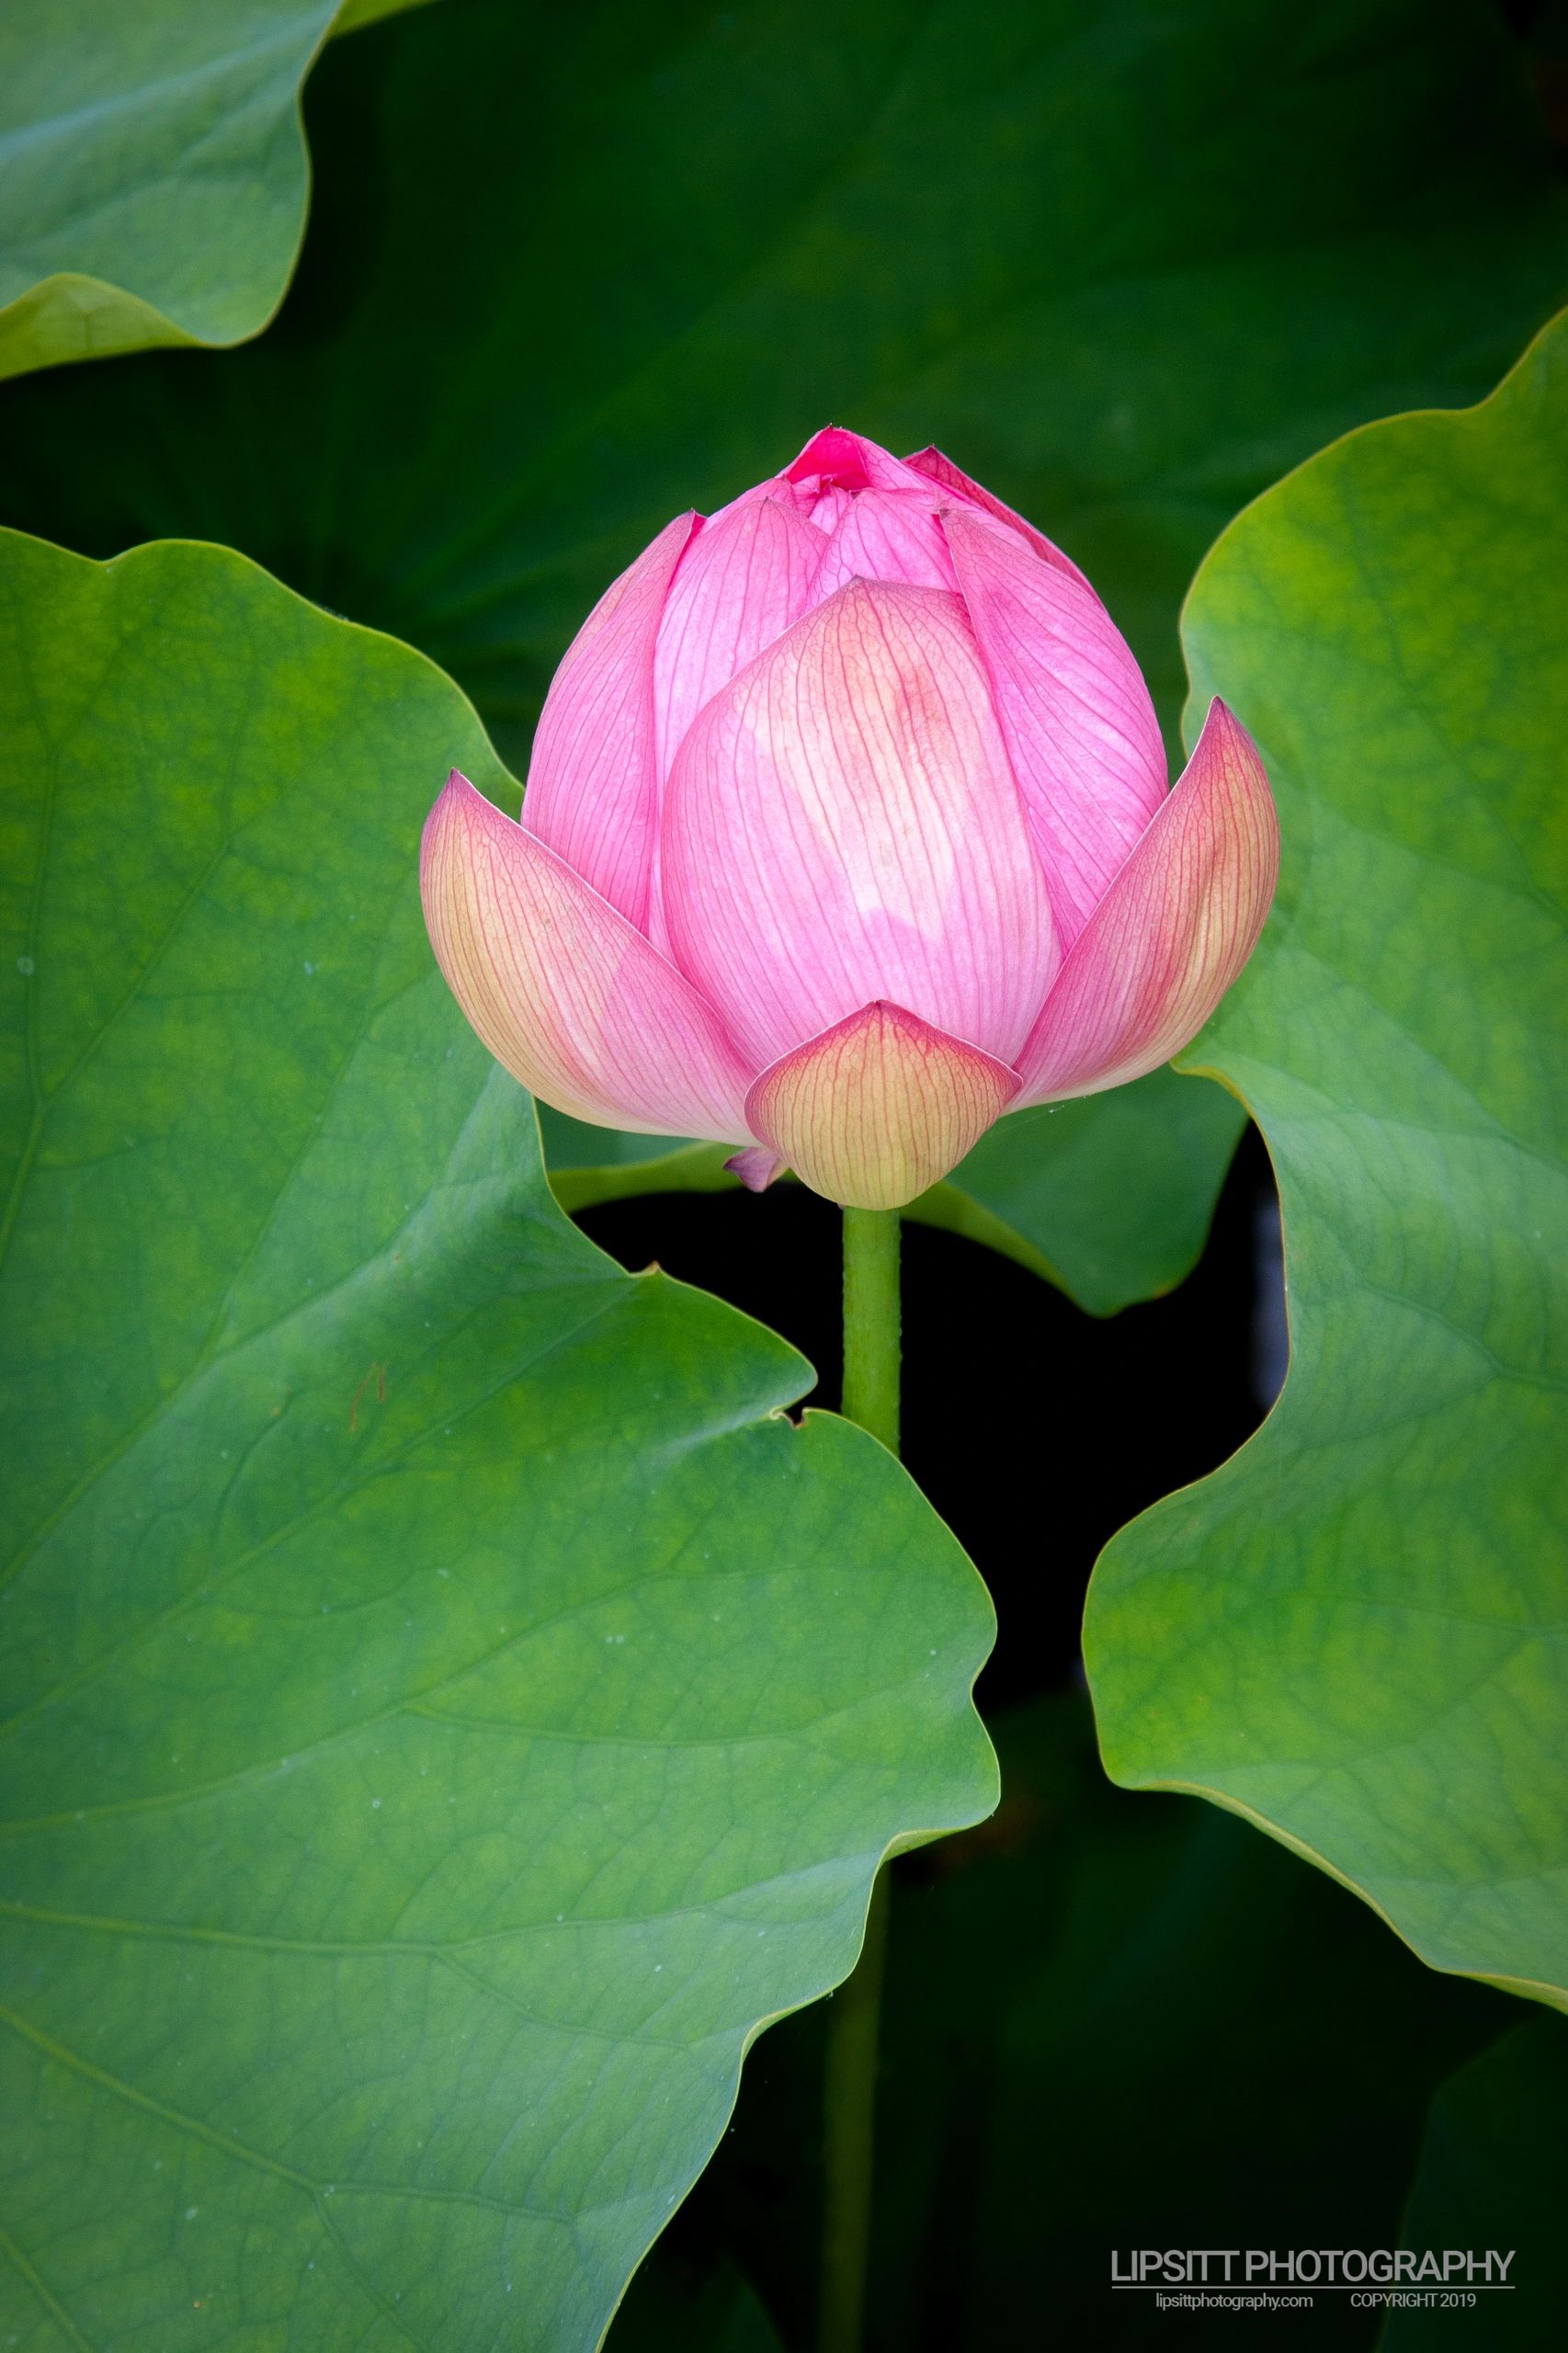 Lotus Pond – Royal Botanic Gardens, Sydney Australia